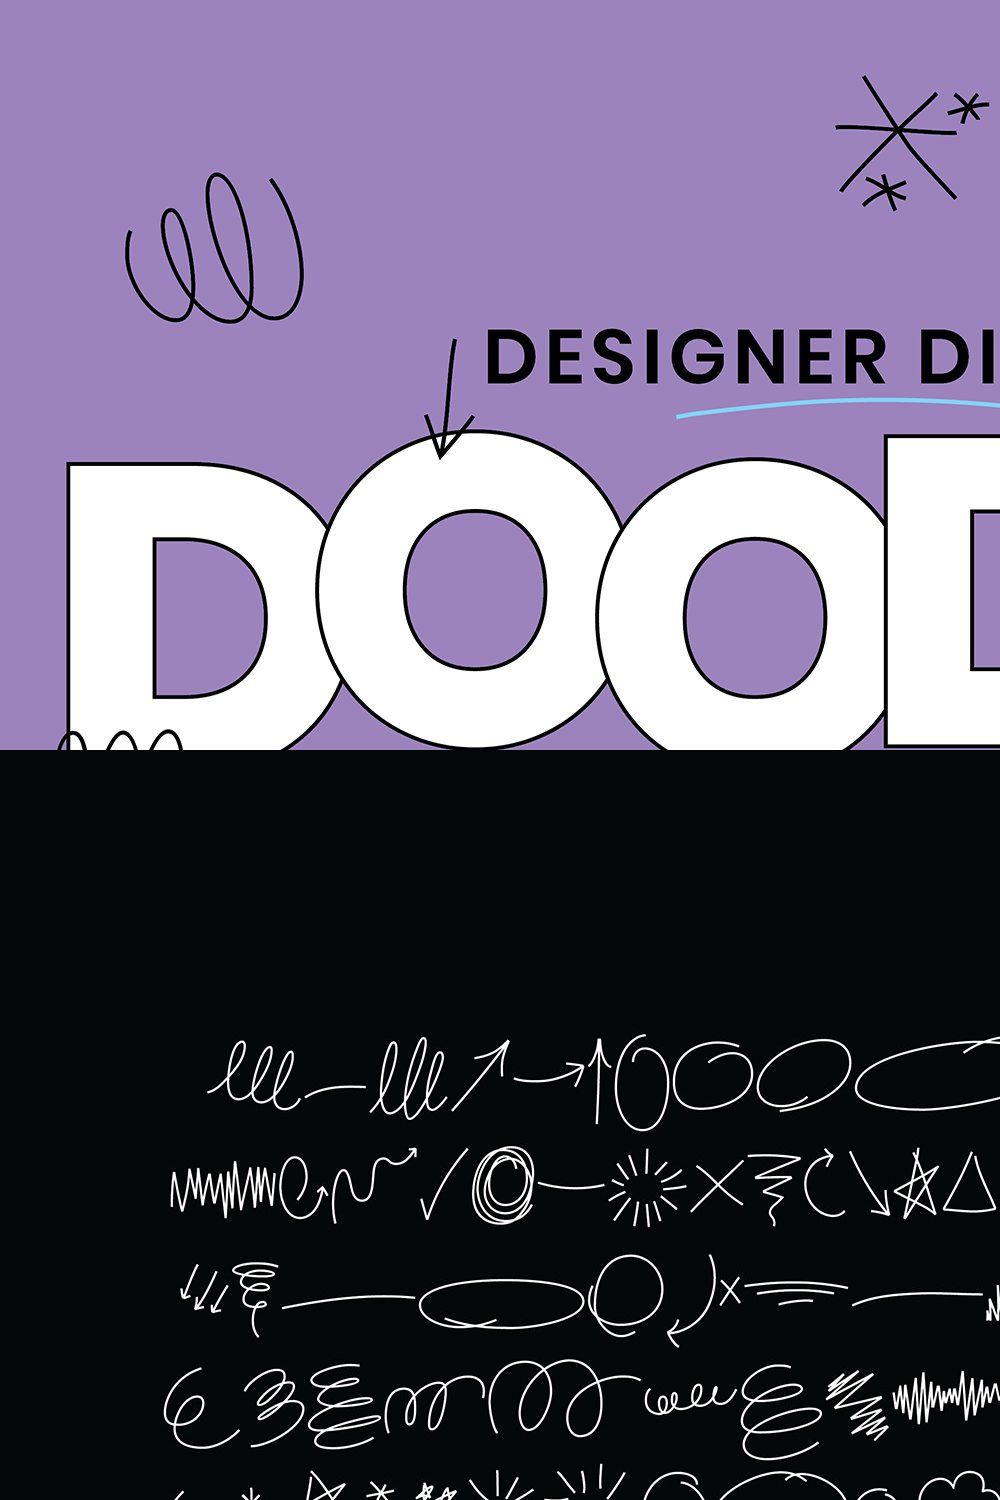 Doodle Dingbats Font - 106 Shapes! pinterest preview image.